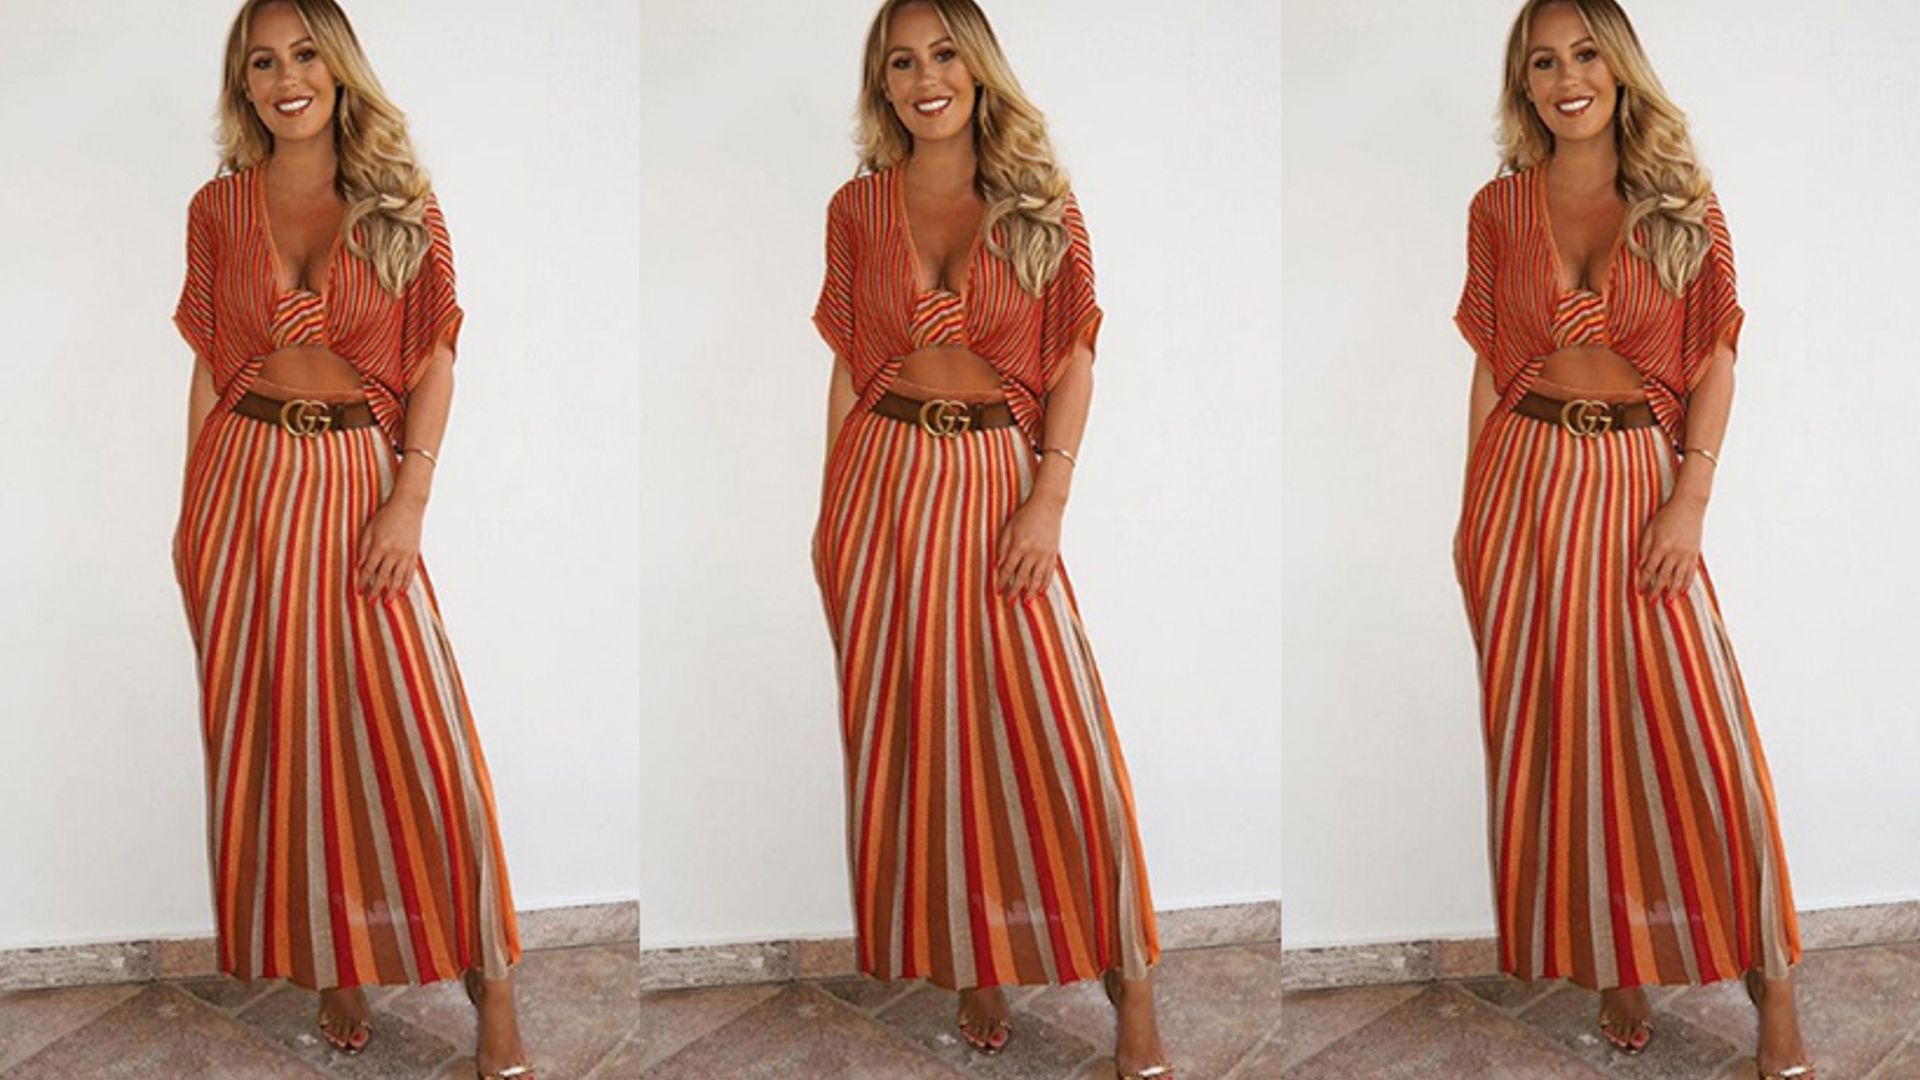 kate wright orange red striped skirt instagram